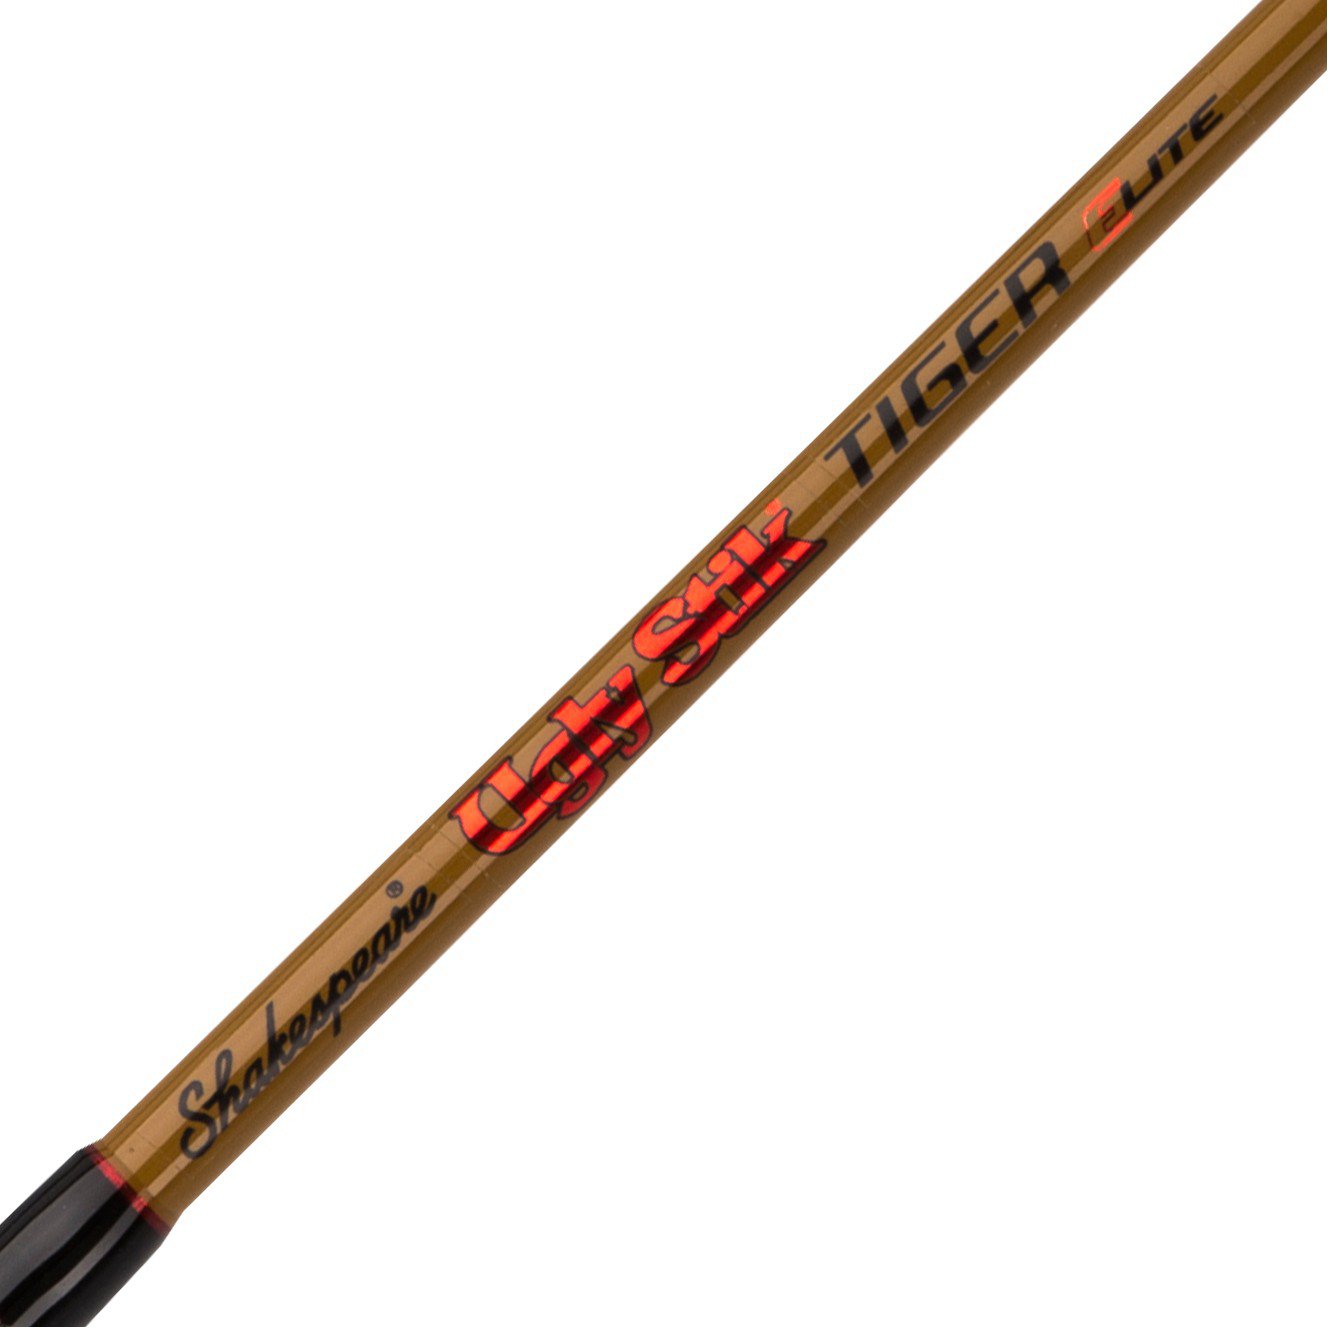 Ugly Stik Tiger Elite Jig Casting Rod, 1 - Baitcast Rods at Academy Sports  USTEJG100200C581 043388417831